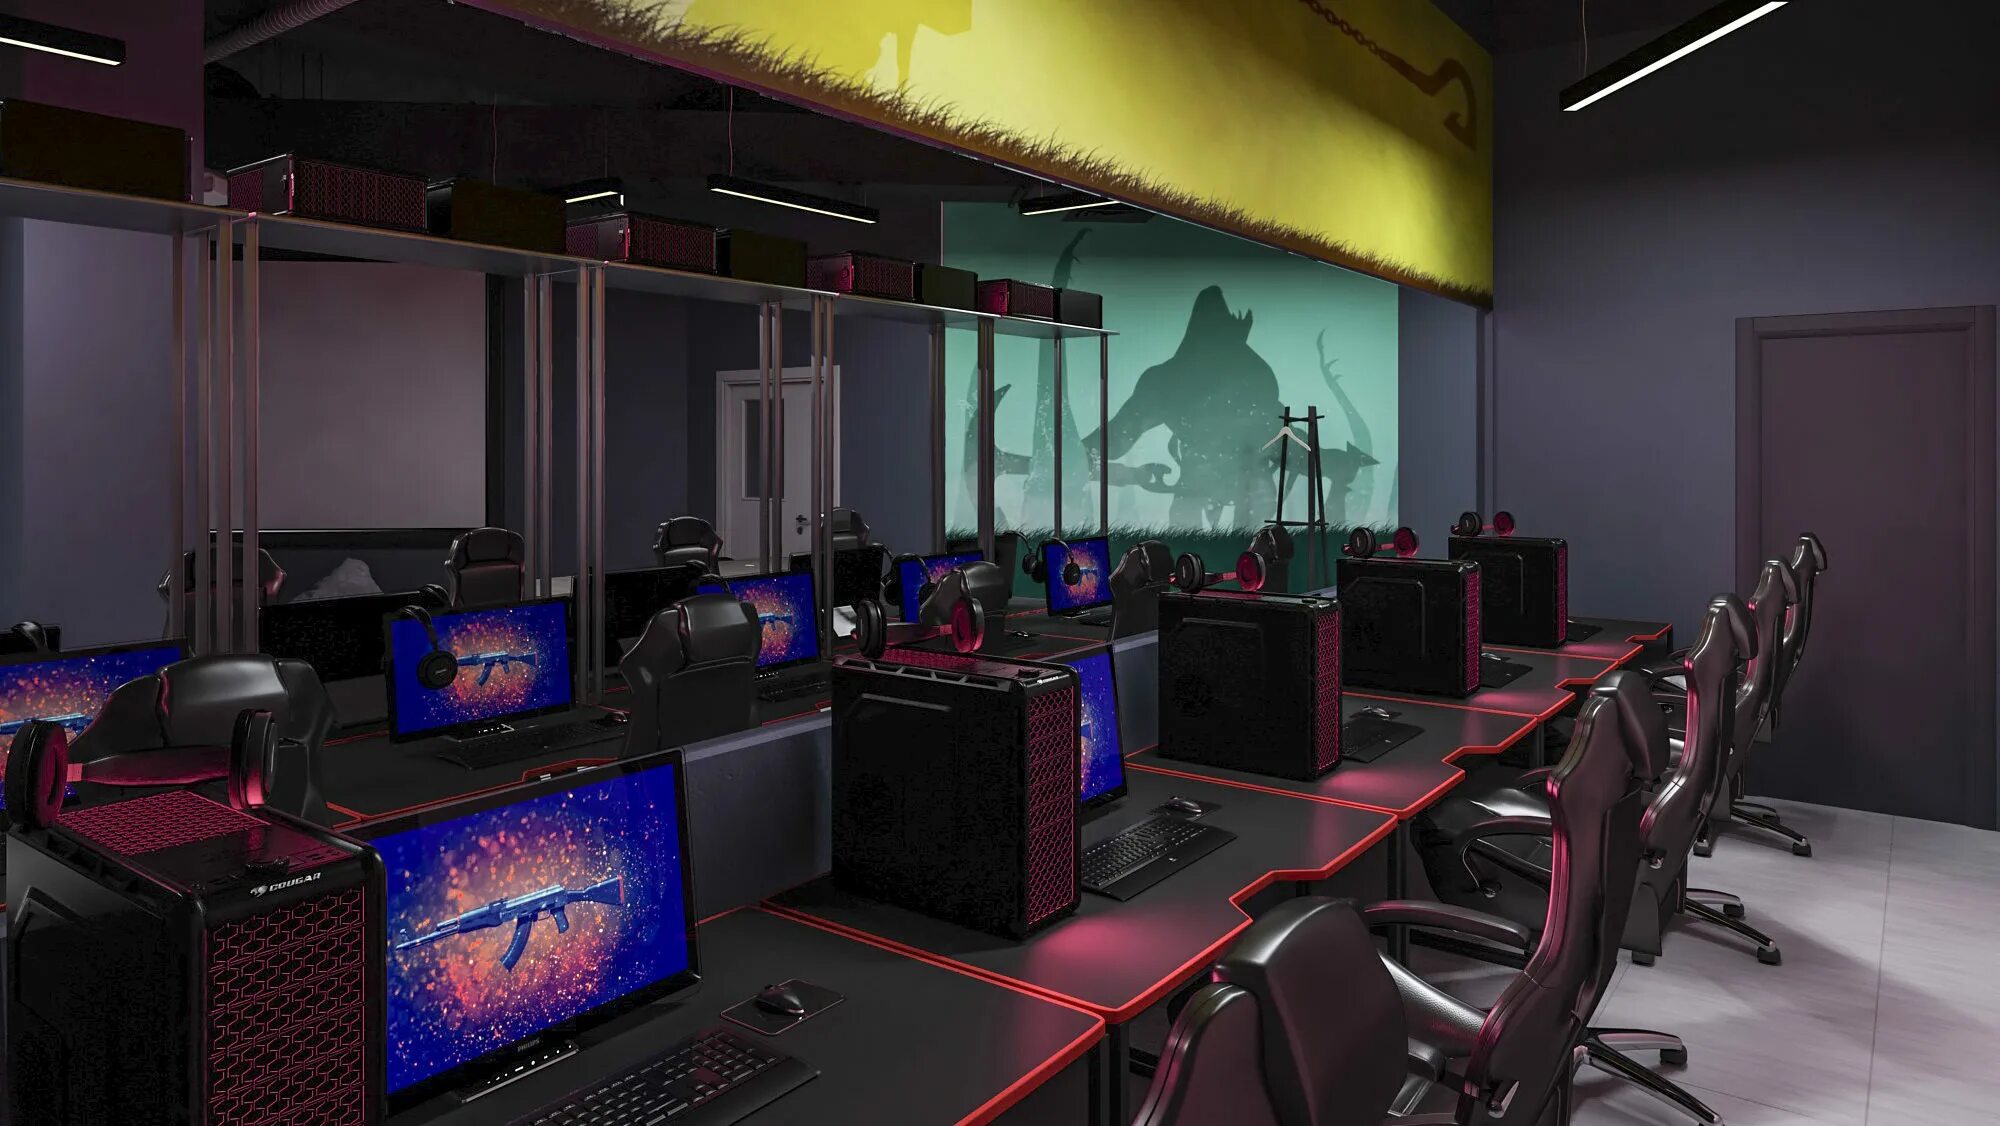 Интернет кафе это. Игровой компьютерный зал. Компьютерная комната. Интерьер интернет кафе. Игровой компьютерный клуб.